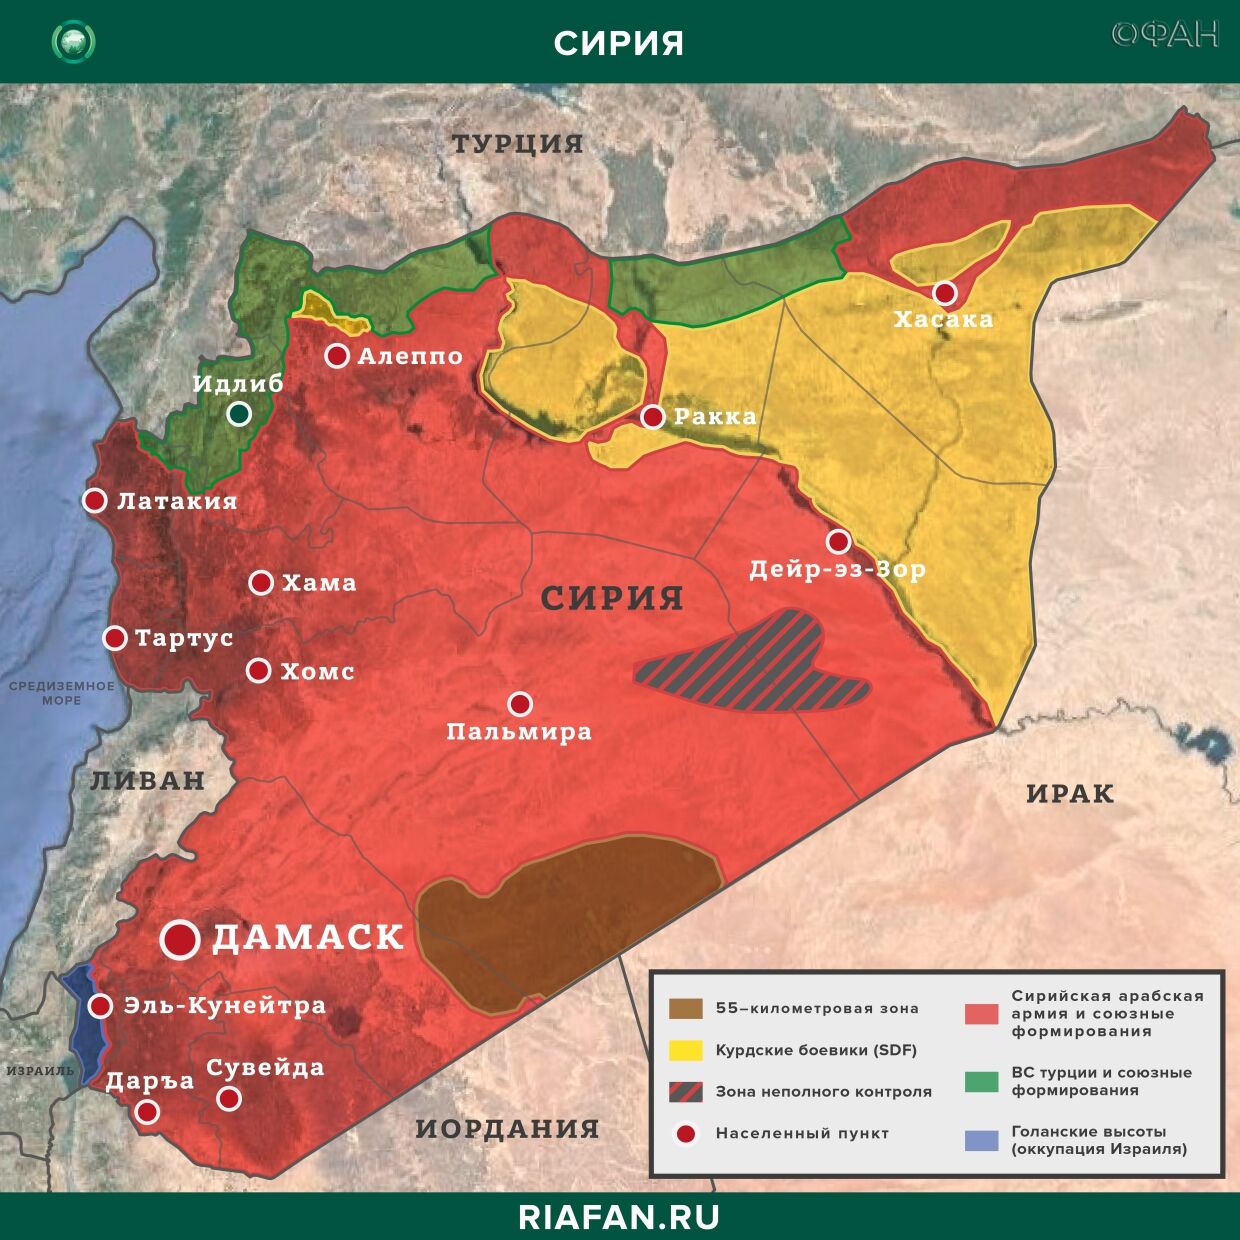 Noticias de Siria 30 Marzo 22.30: нападение боевиков в Даръа, ХТШ устраняет идейных противников в Идлибе